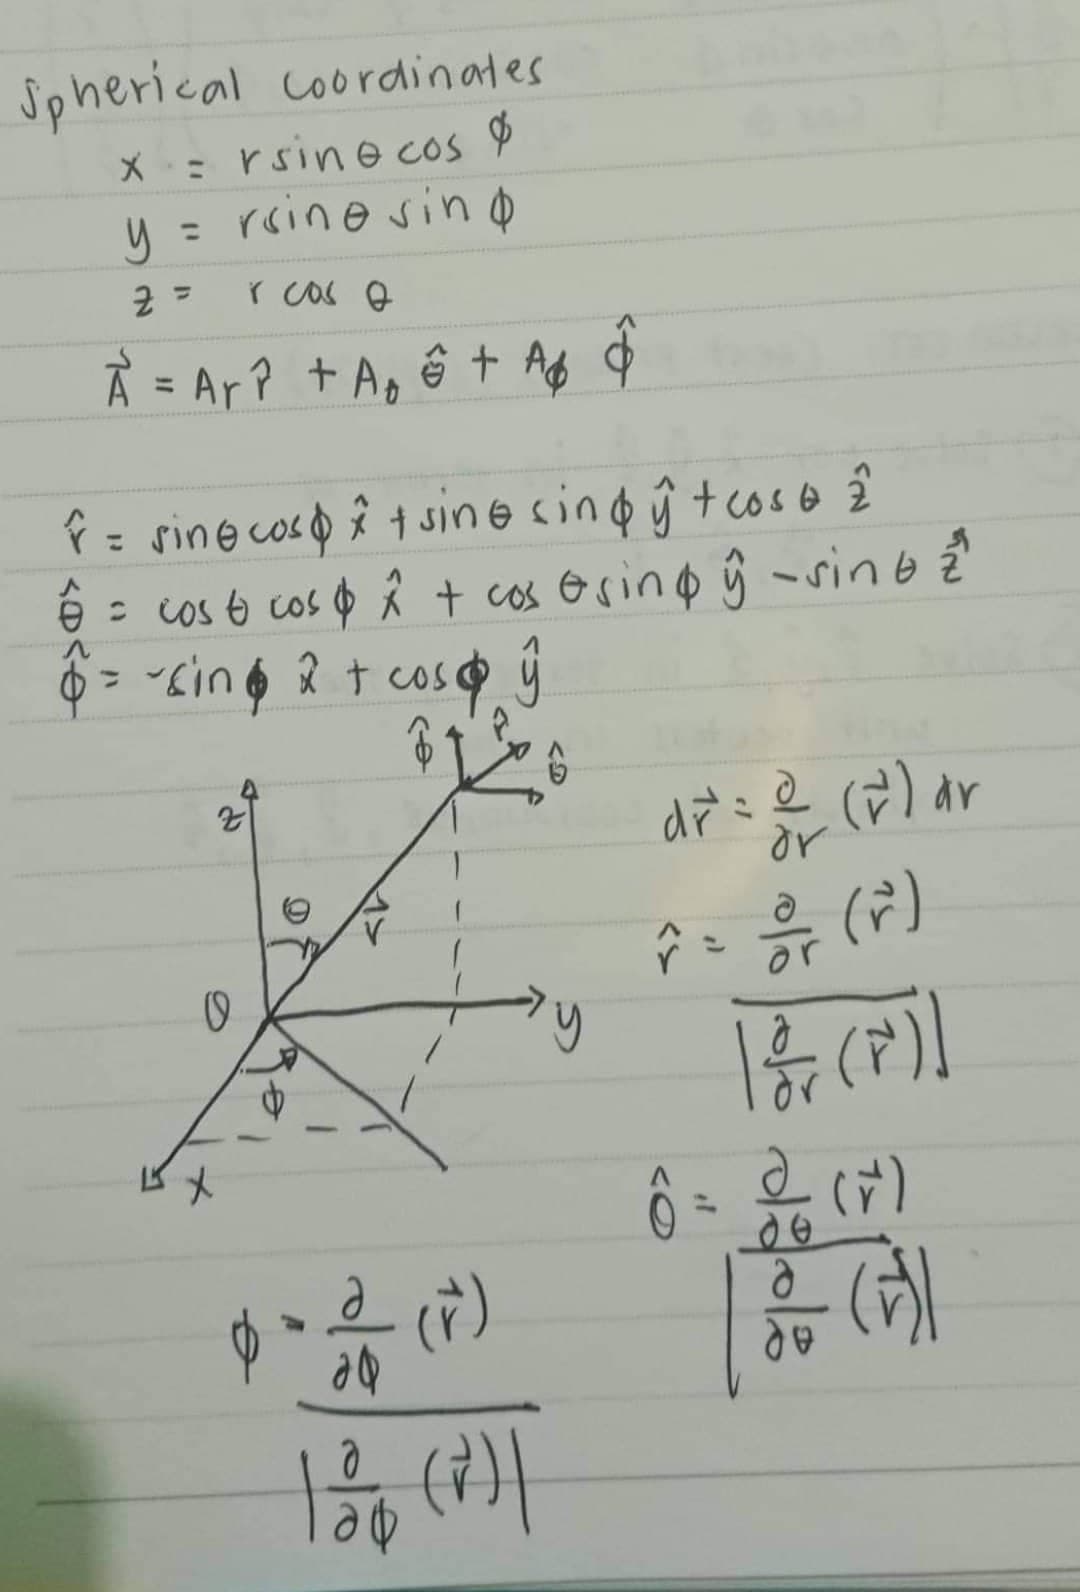 Spherical coordinates
x = rsine cos &
= rsine sin
d
Z =
r cas o
À = A₁² + A₂ = + A6 o
sine cos i tsine sind ŷ + cosa
€ = cos to cos & x + cos Osing ŷ - sino z
$ = -sin • 2 + cos@ ŷ
P
$
Z
0
1>
$ * & (r)
12/0 (²)|
6
y
dr² = ²² (²) ar
으
or
^ = // (v²)
1 & (P)]
2 (r)
de
d
de
(1)